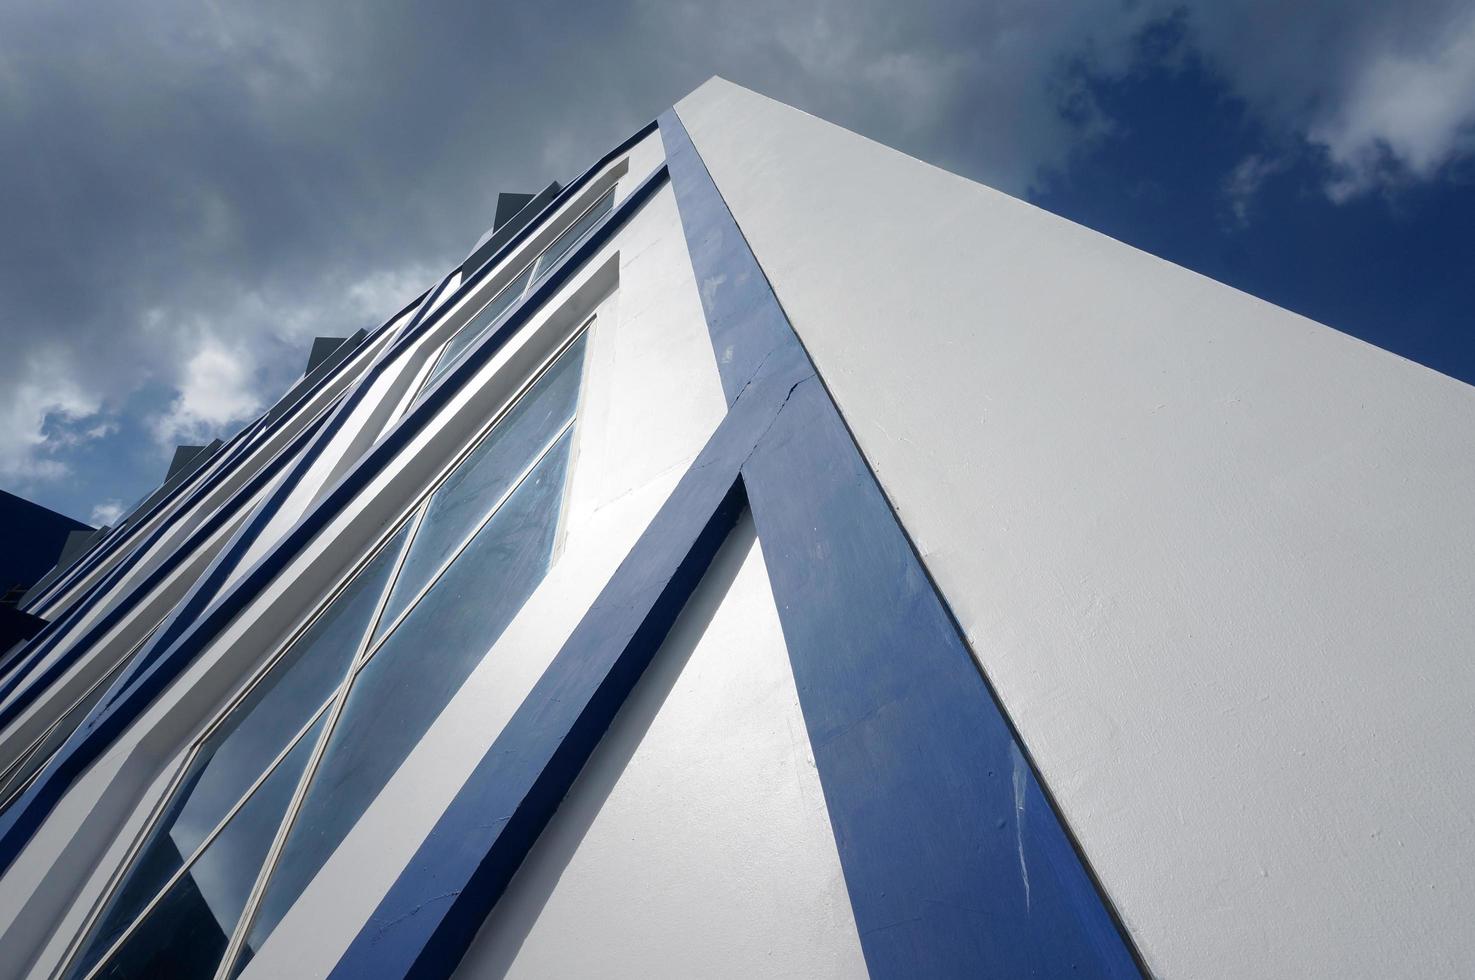 sangatta, kutai oriental, kalimantan oriental, indonesia, 2022 - arquitectura moderna azul y blanca con ventanas de cristal del pentágono. cielo azul y reflejo de nubes. foto